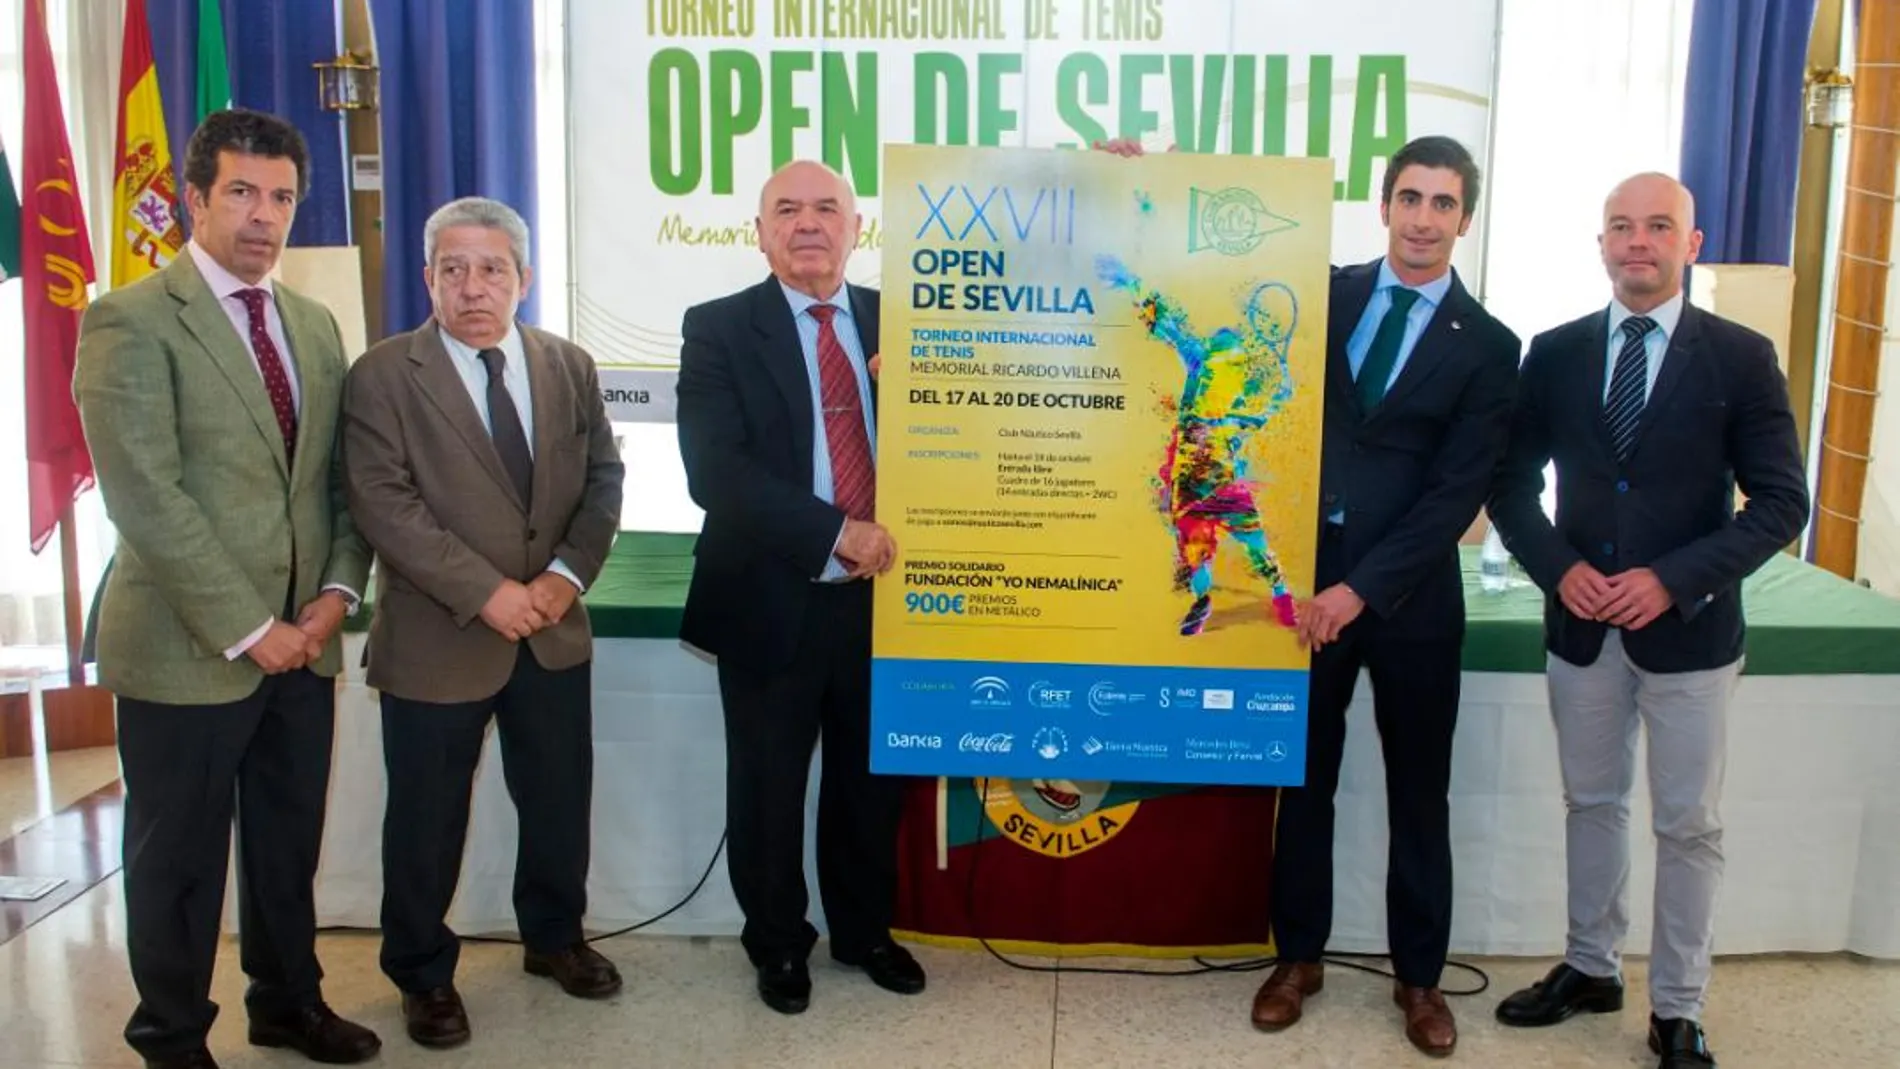 Comienza el 27º Open de Sevilla de Tenis Memorial Ricardo Villena